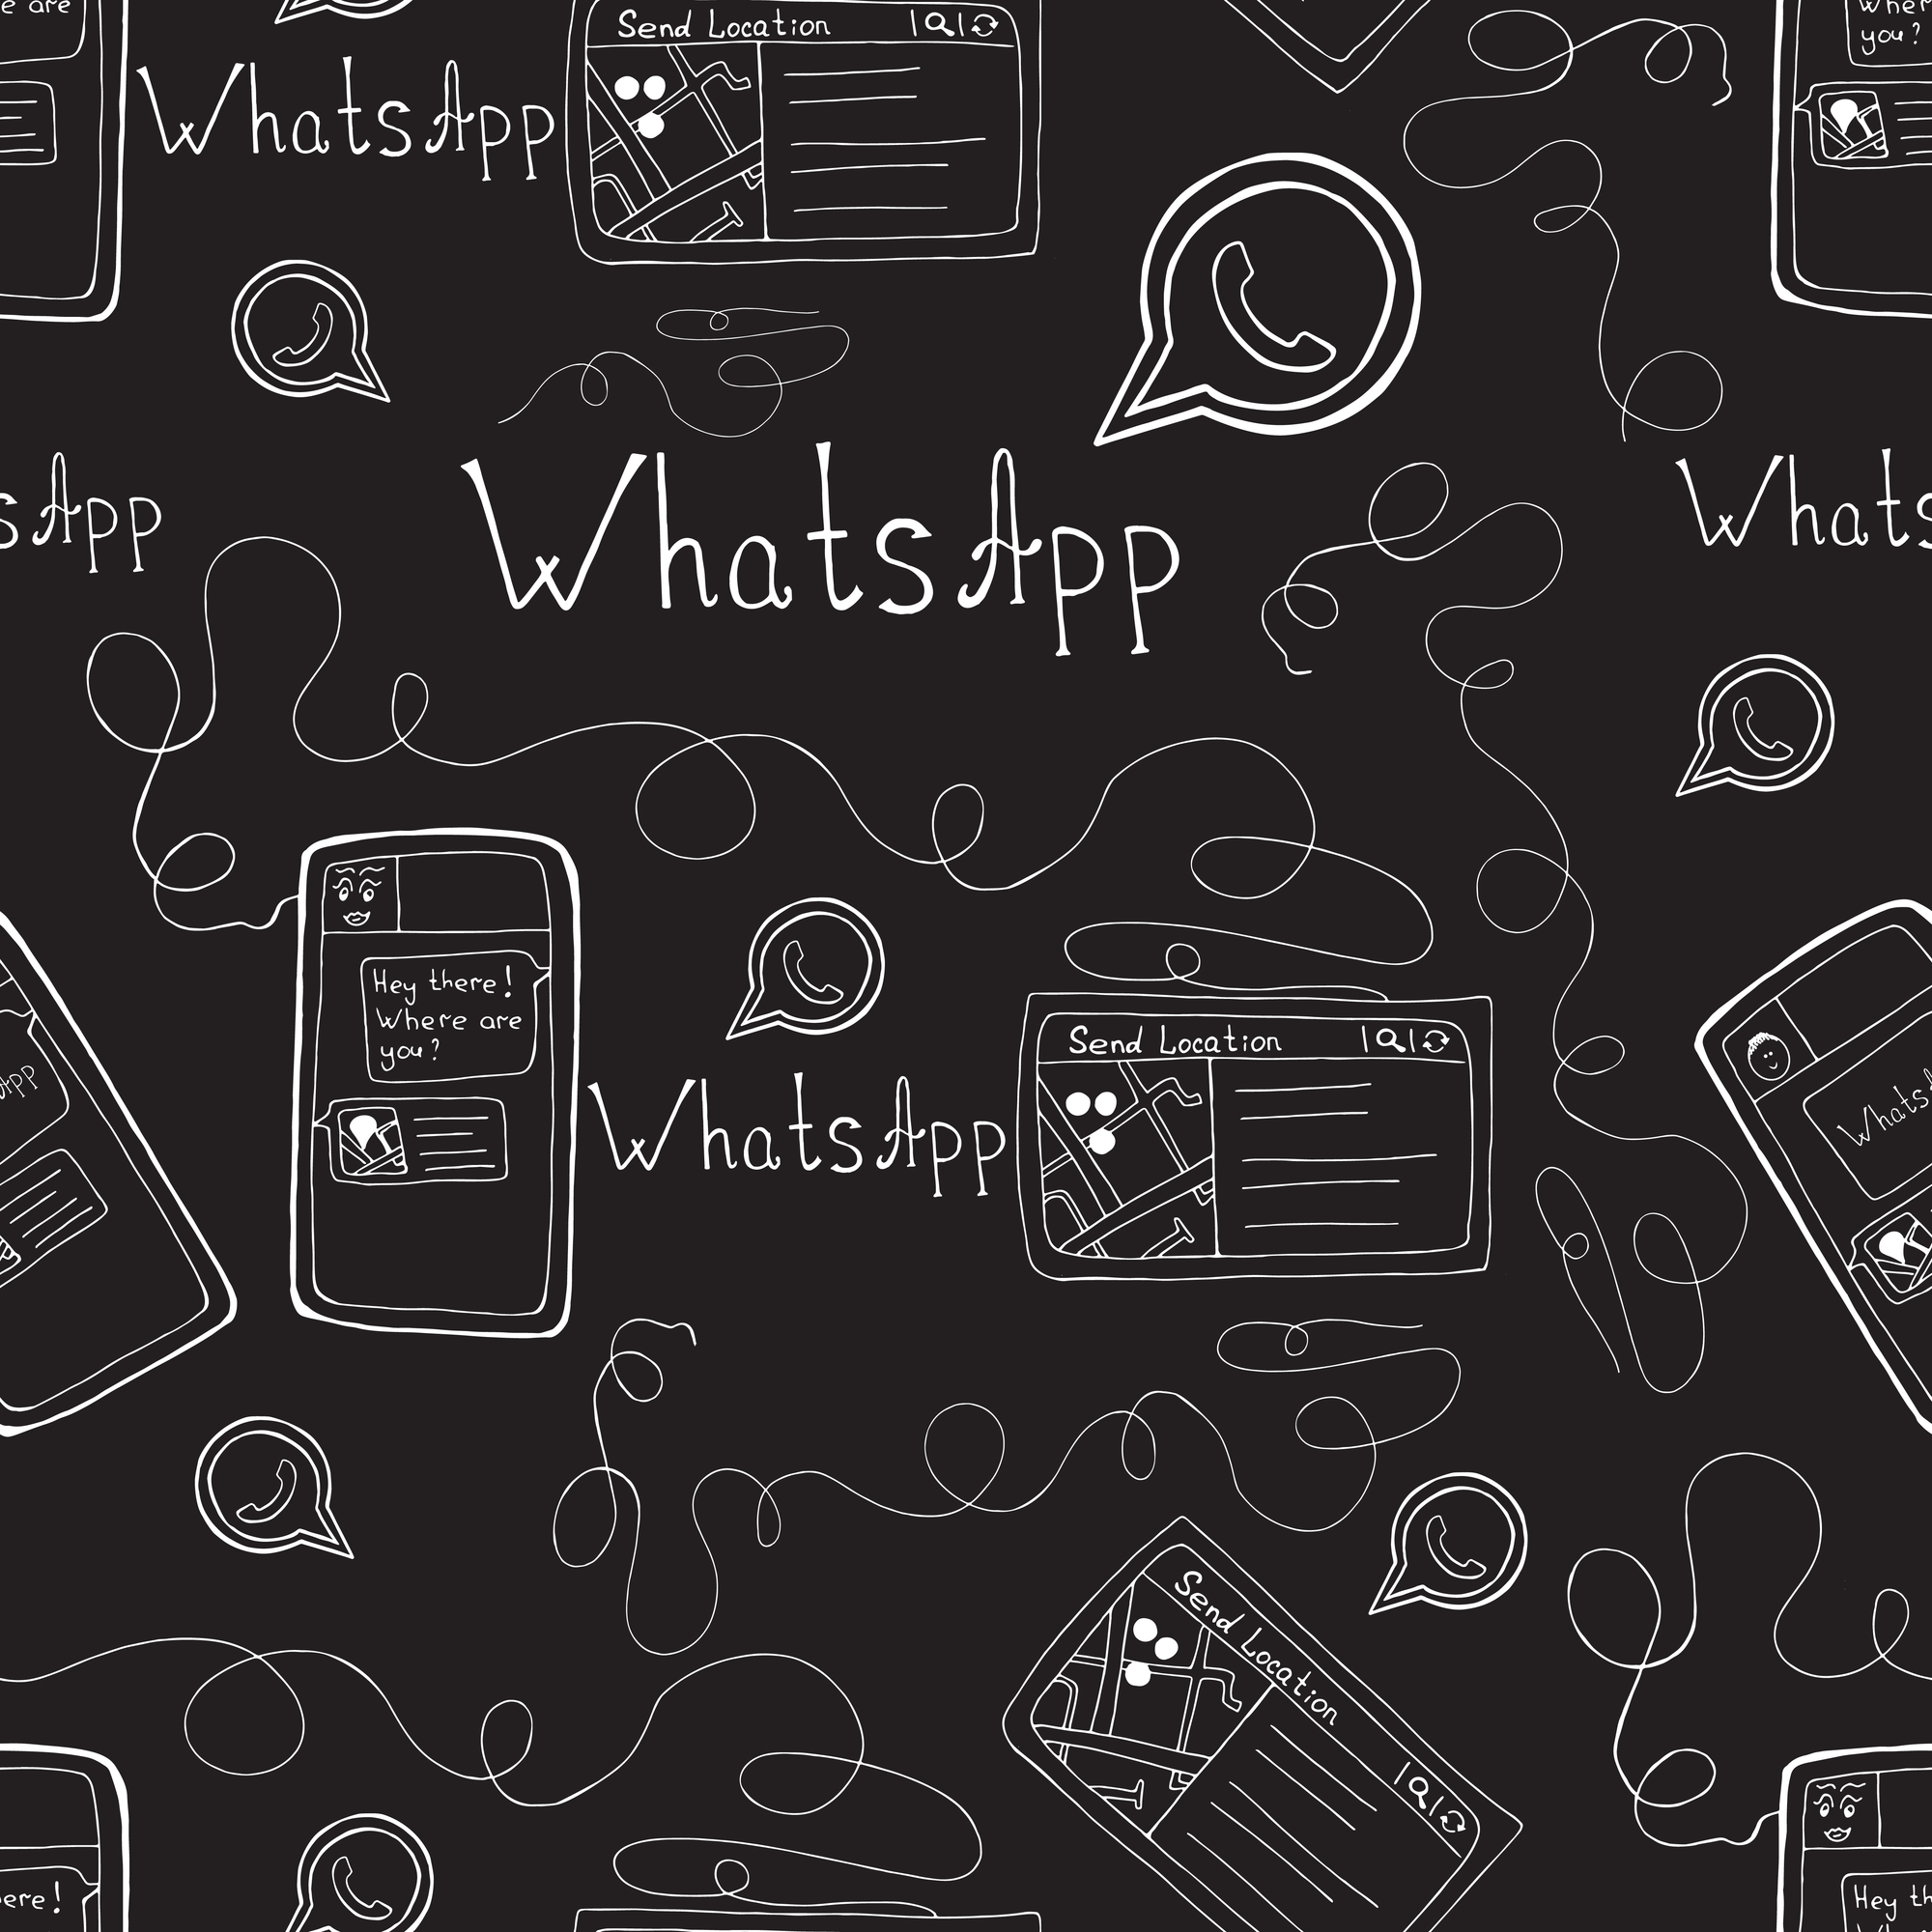 Como as empresas podem aumentar a segurança no uso do WhatsApp